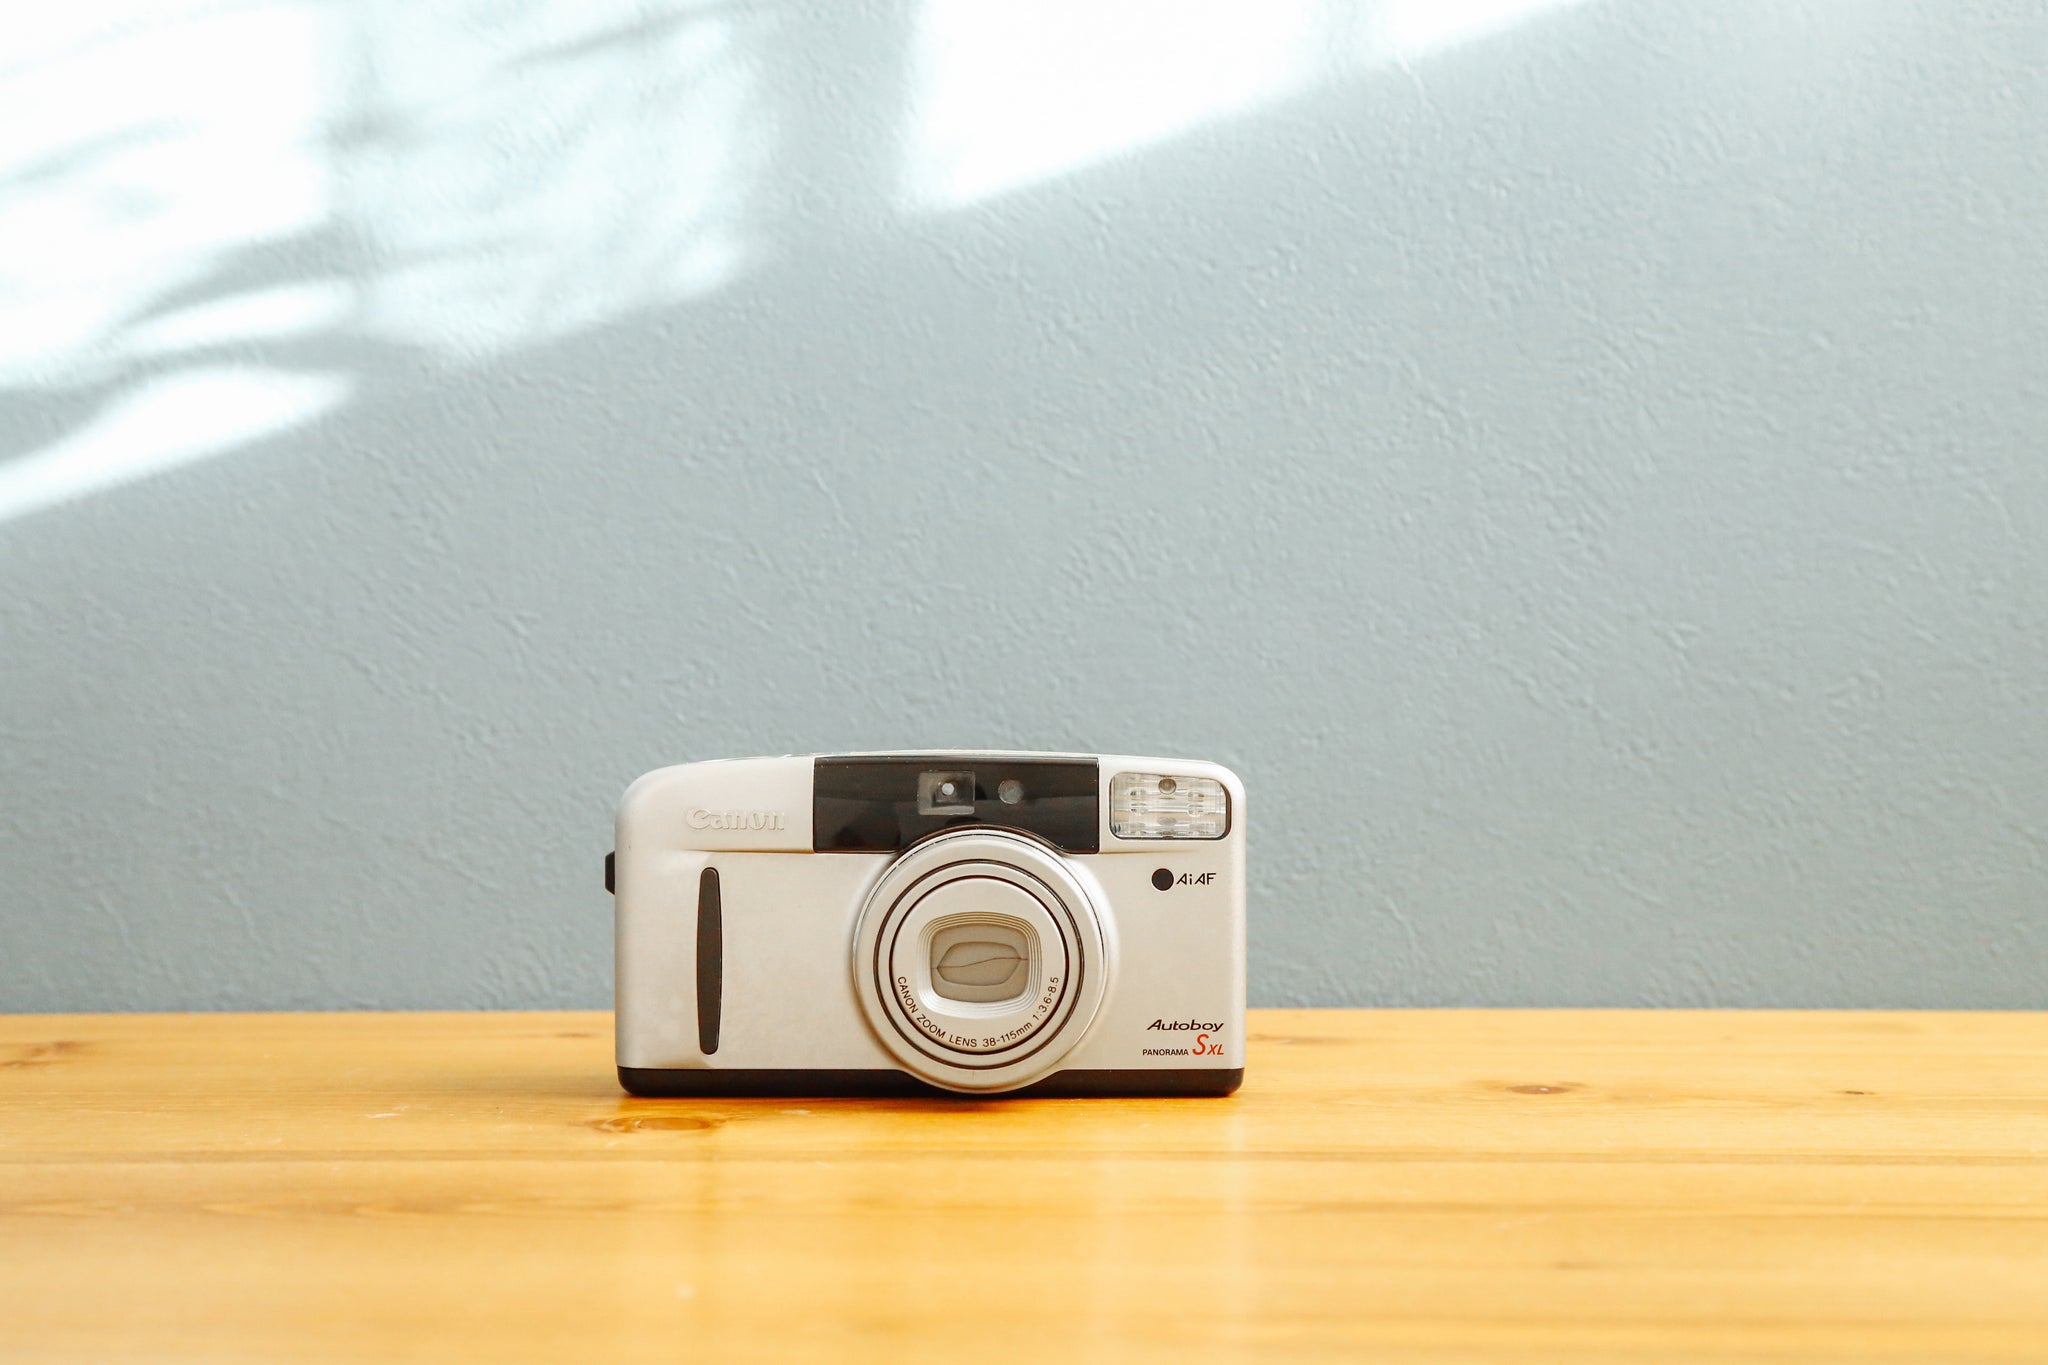 カメラ女子【極美品✨完動品】Canon Autoboy SXL - フィルムカメラ